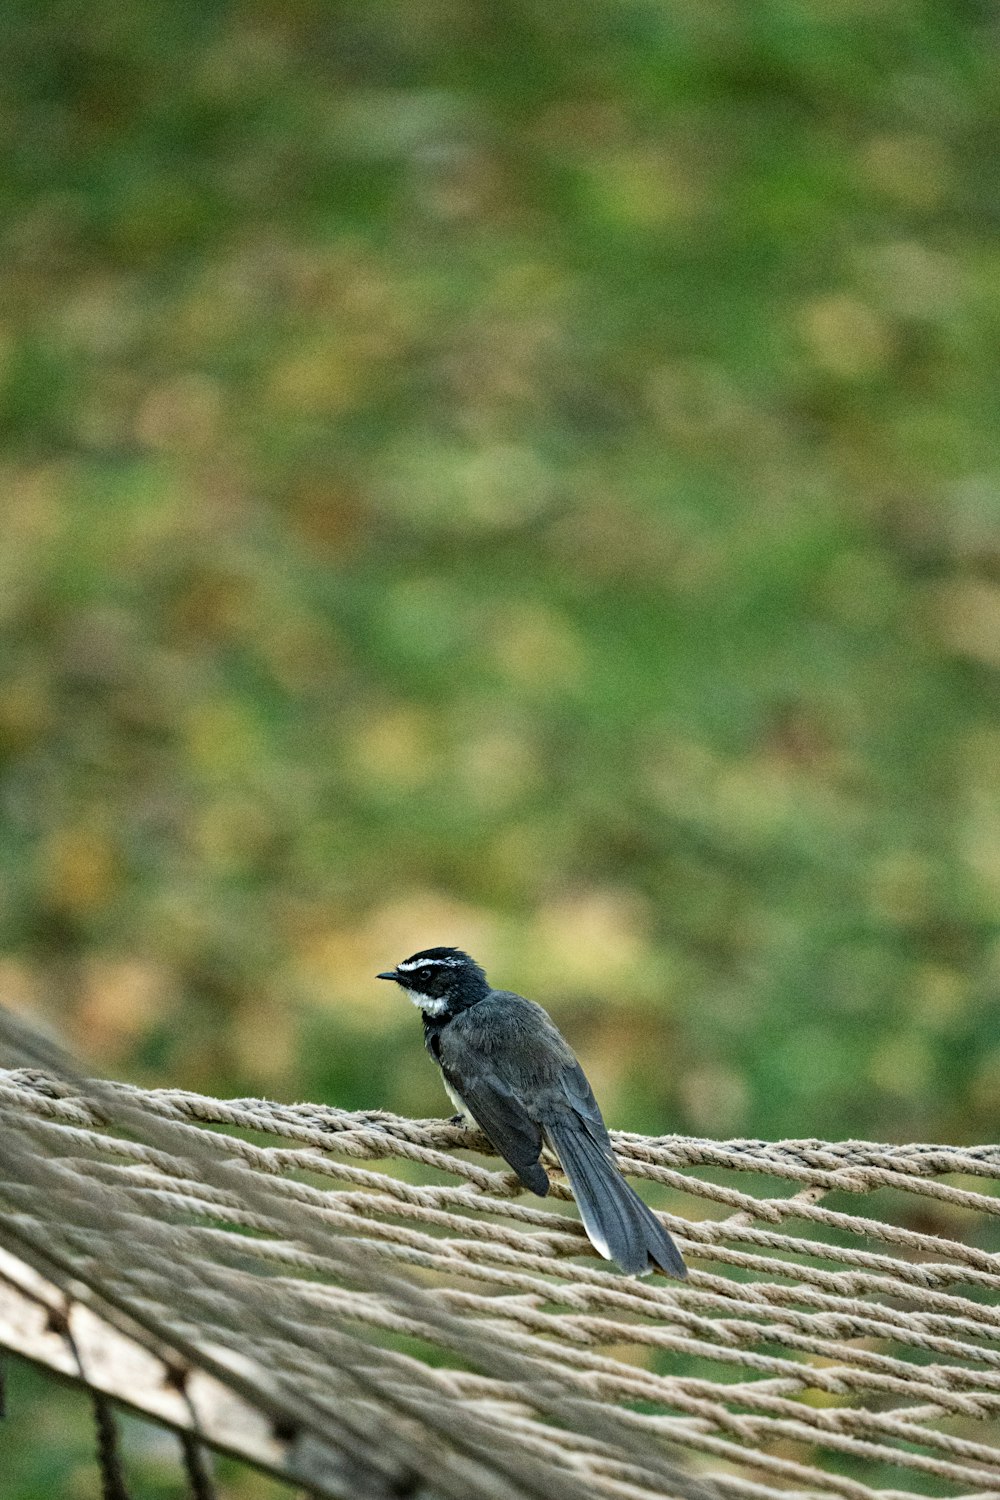 a bird sitting on top of a hammock